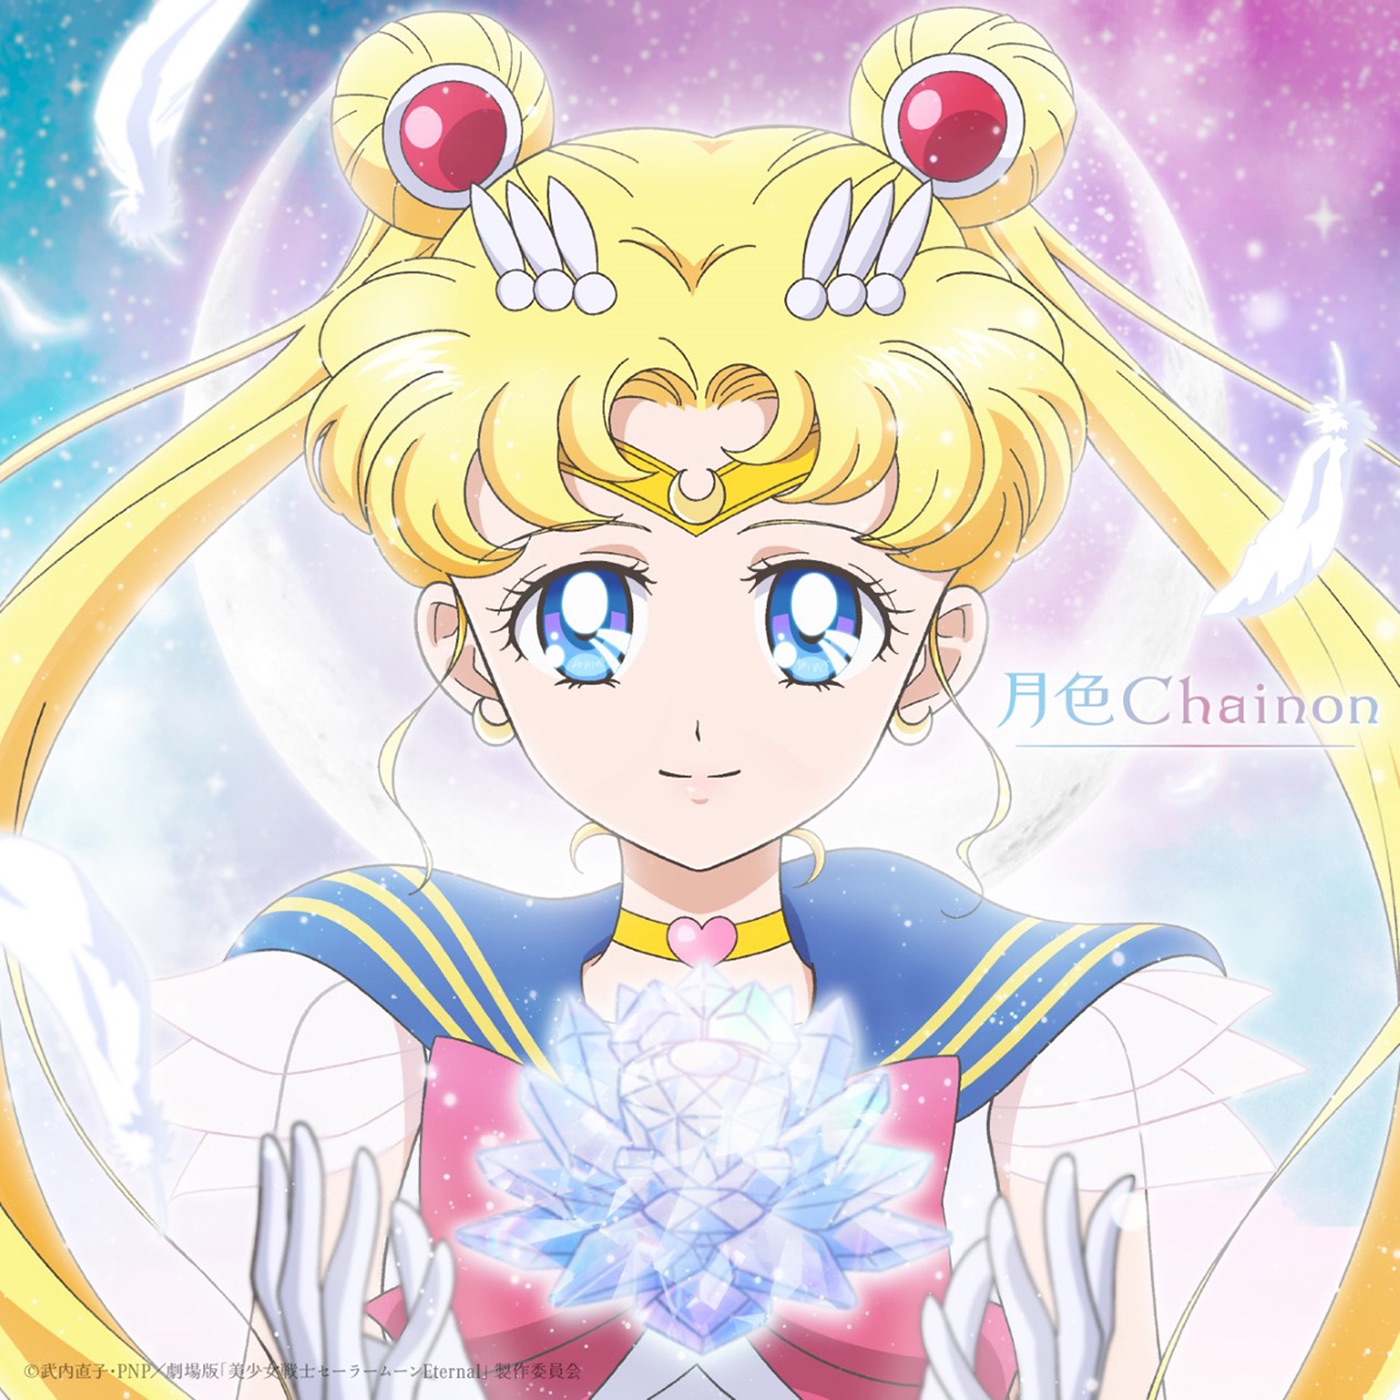 Momoiro Clover with Sailor Moon (CV: Kotono Mitsuishi) & Sailor Mercury (CV: Hisako Kanemoto) & Sailor Mars (CV: Rina Satou) & Sailor Jupitor (CV: Ami Koshimitsu) & Sailor Venus (CV: Shizuka Itou) - Gesshoku Chainon